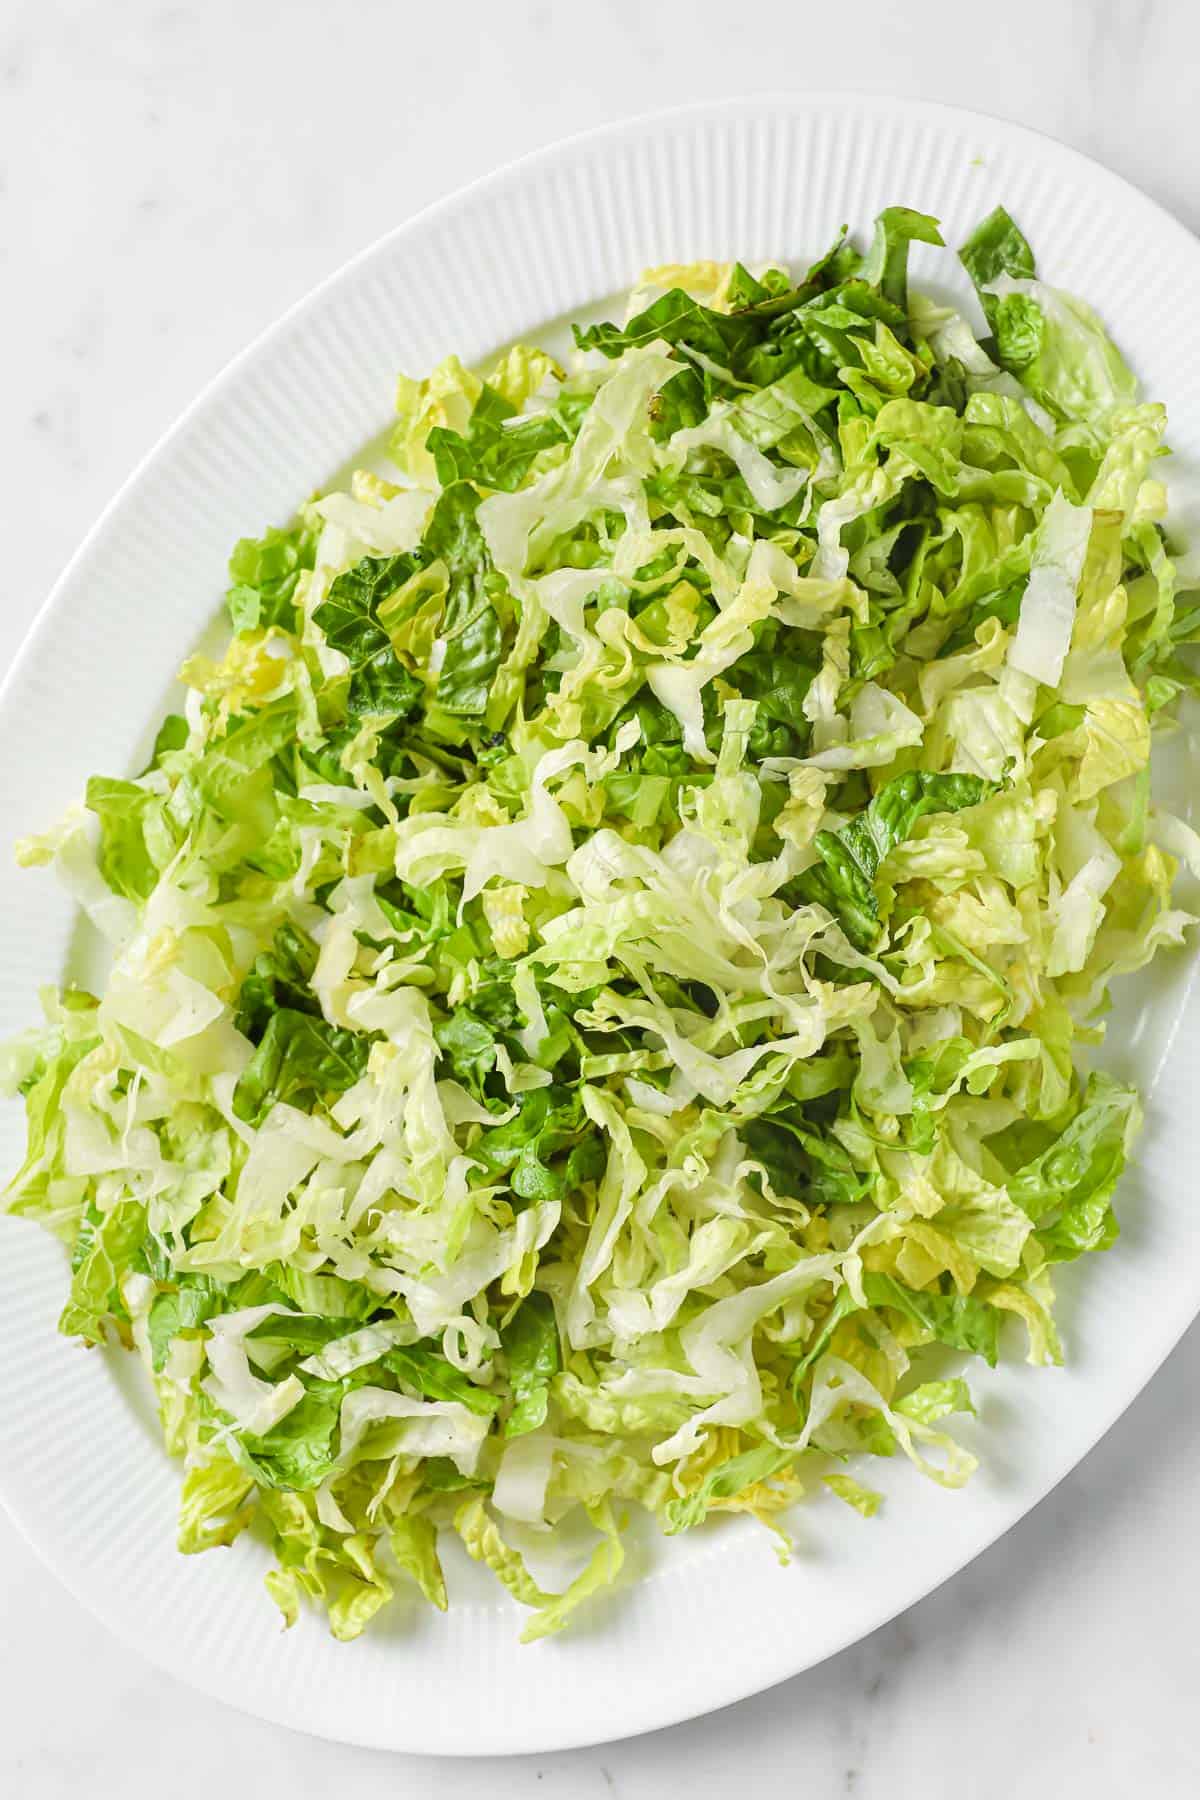 a large serving platter full of shredded romaine lettuce.